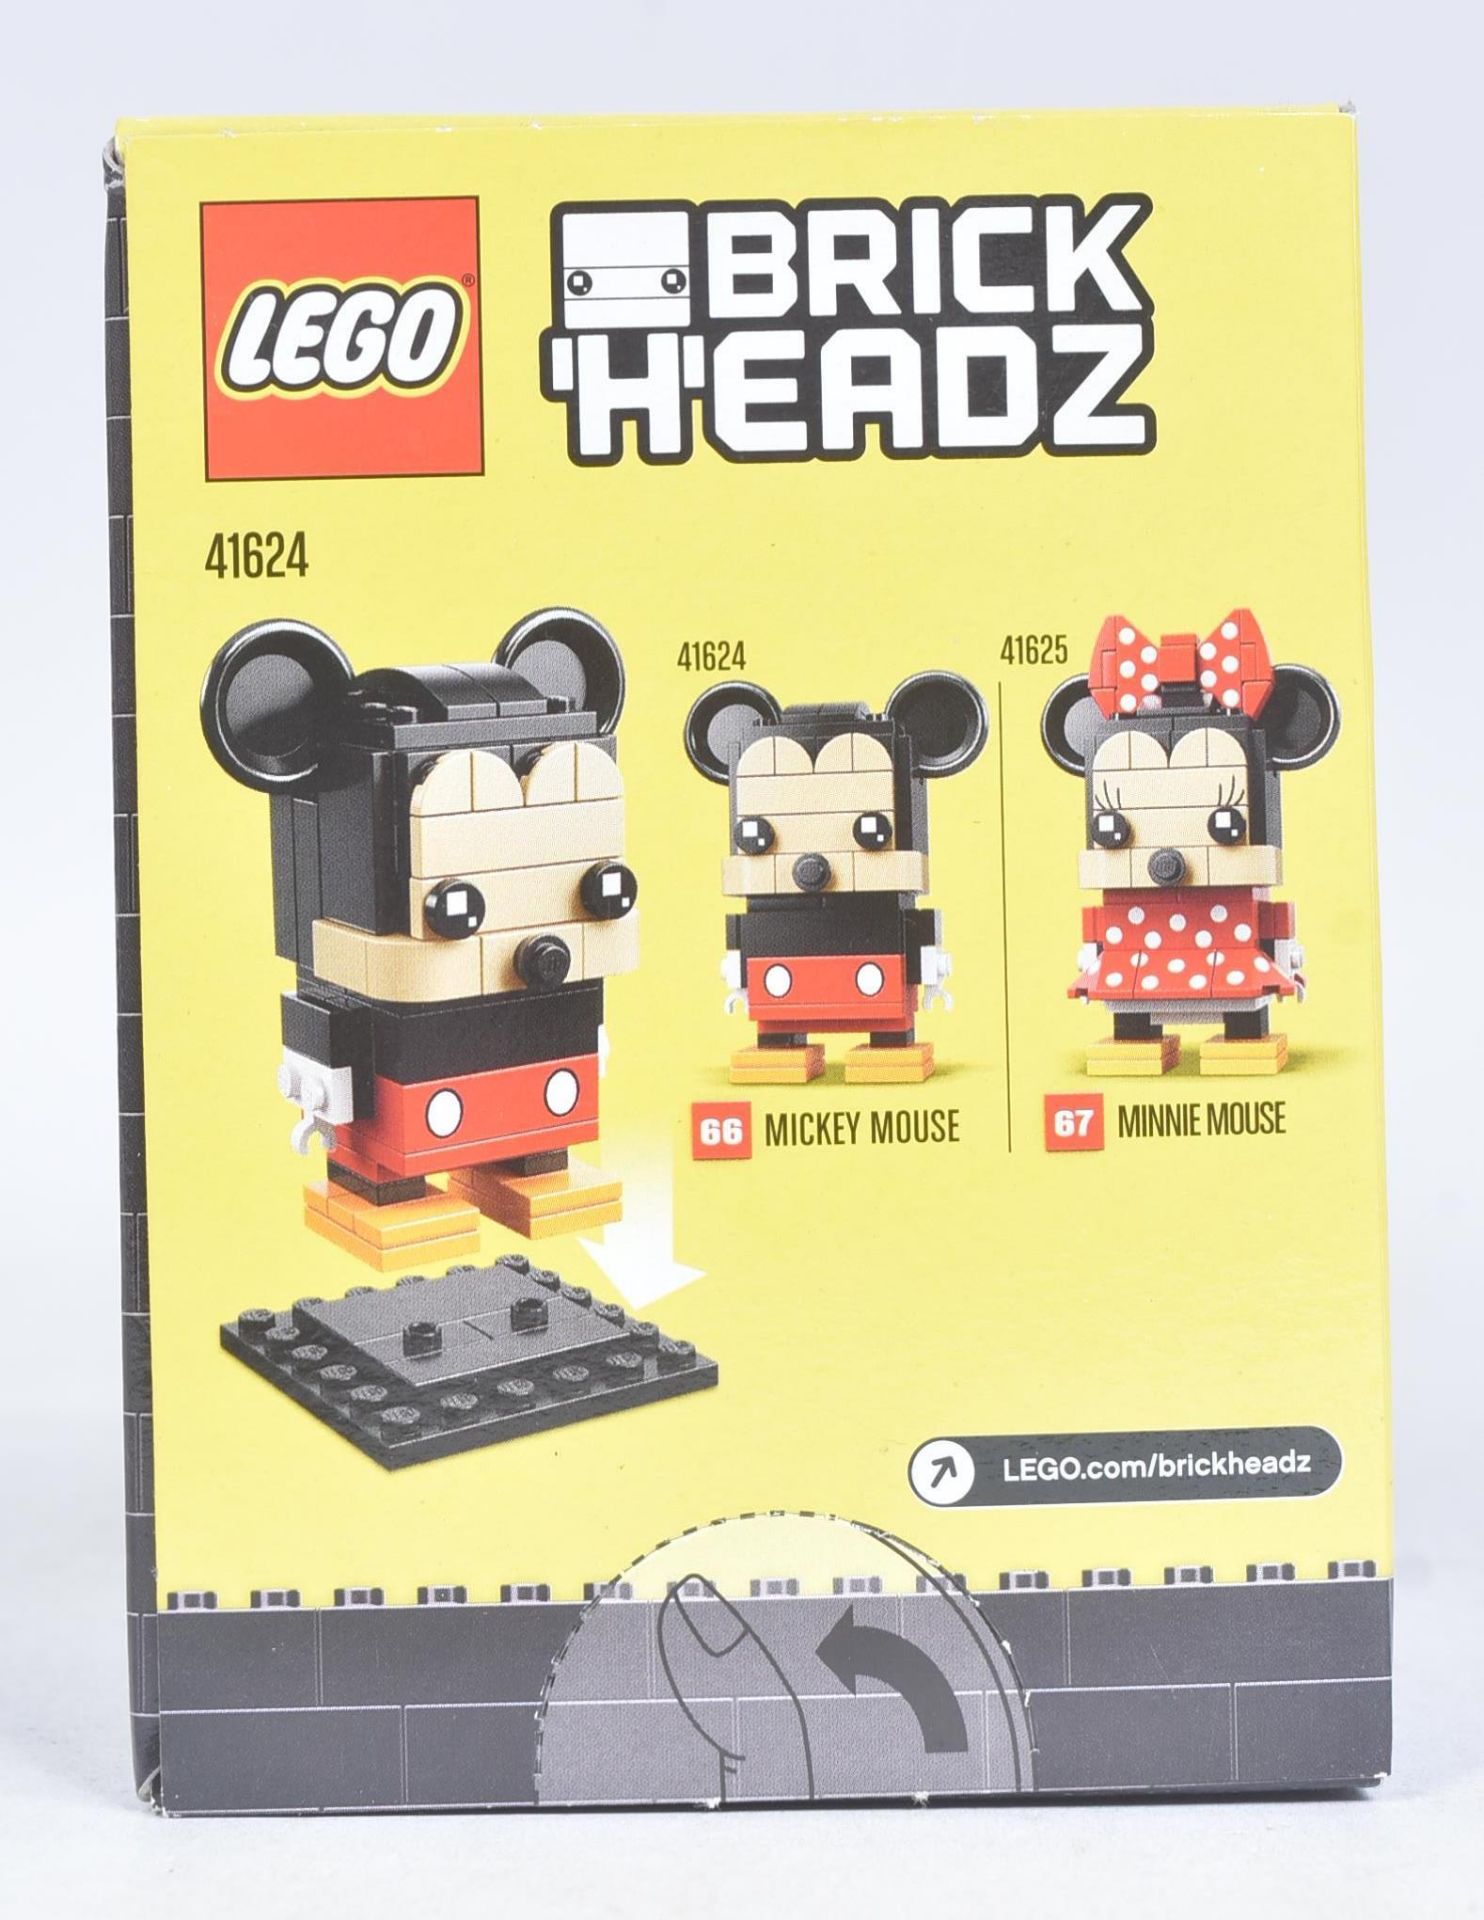 LEGO - BRICKHEADZ - 41624 - MICKEY MOUSE - Image 2 of 4